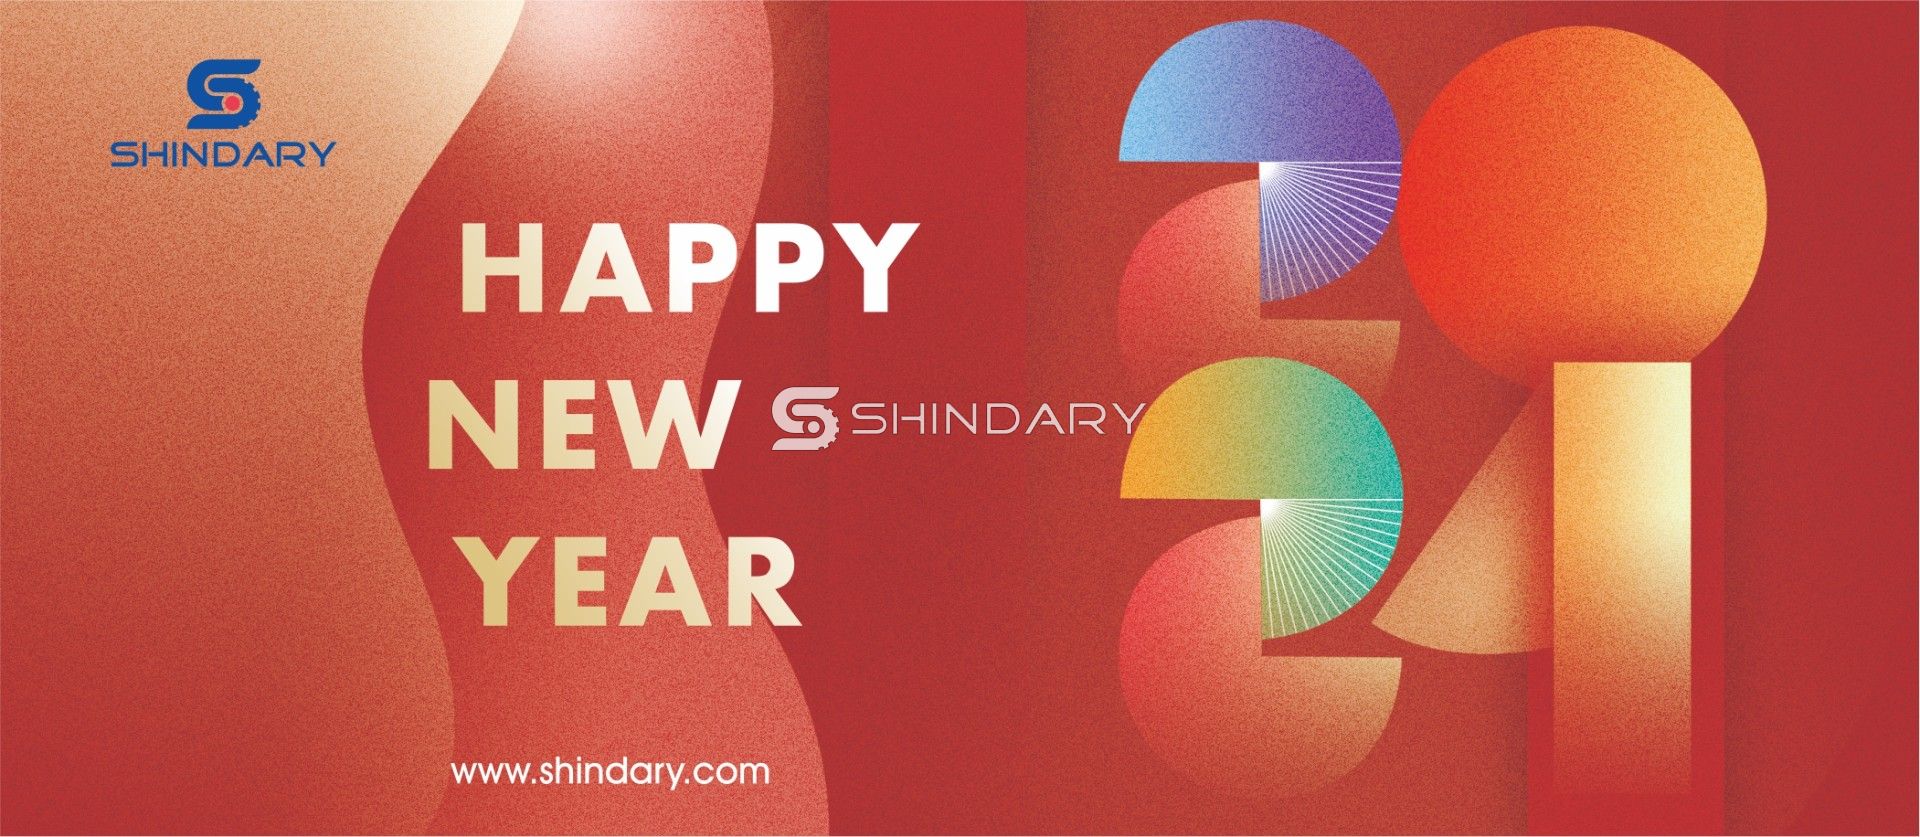 【SHINDARY LIFE】Happy New Year